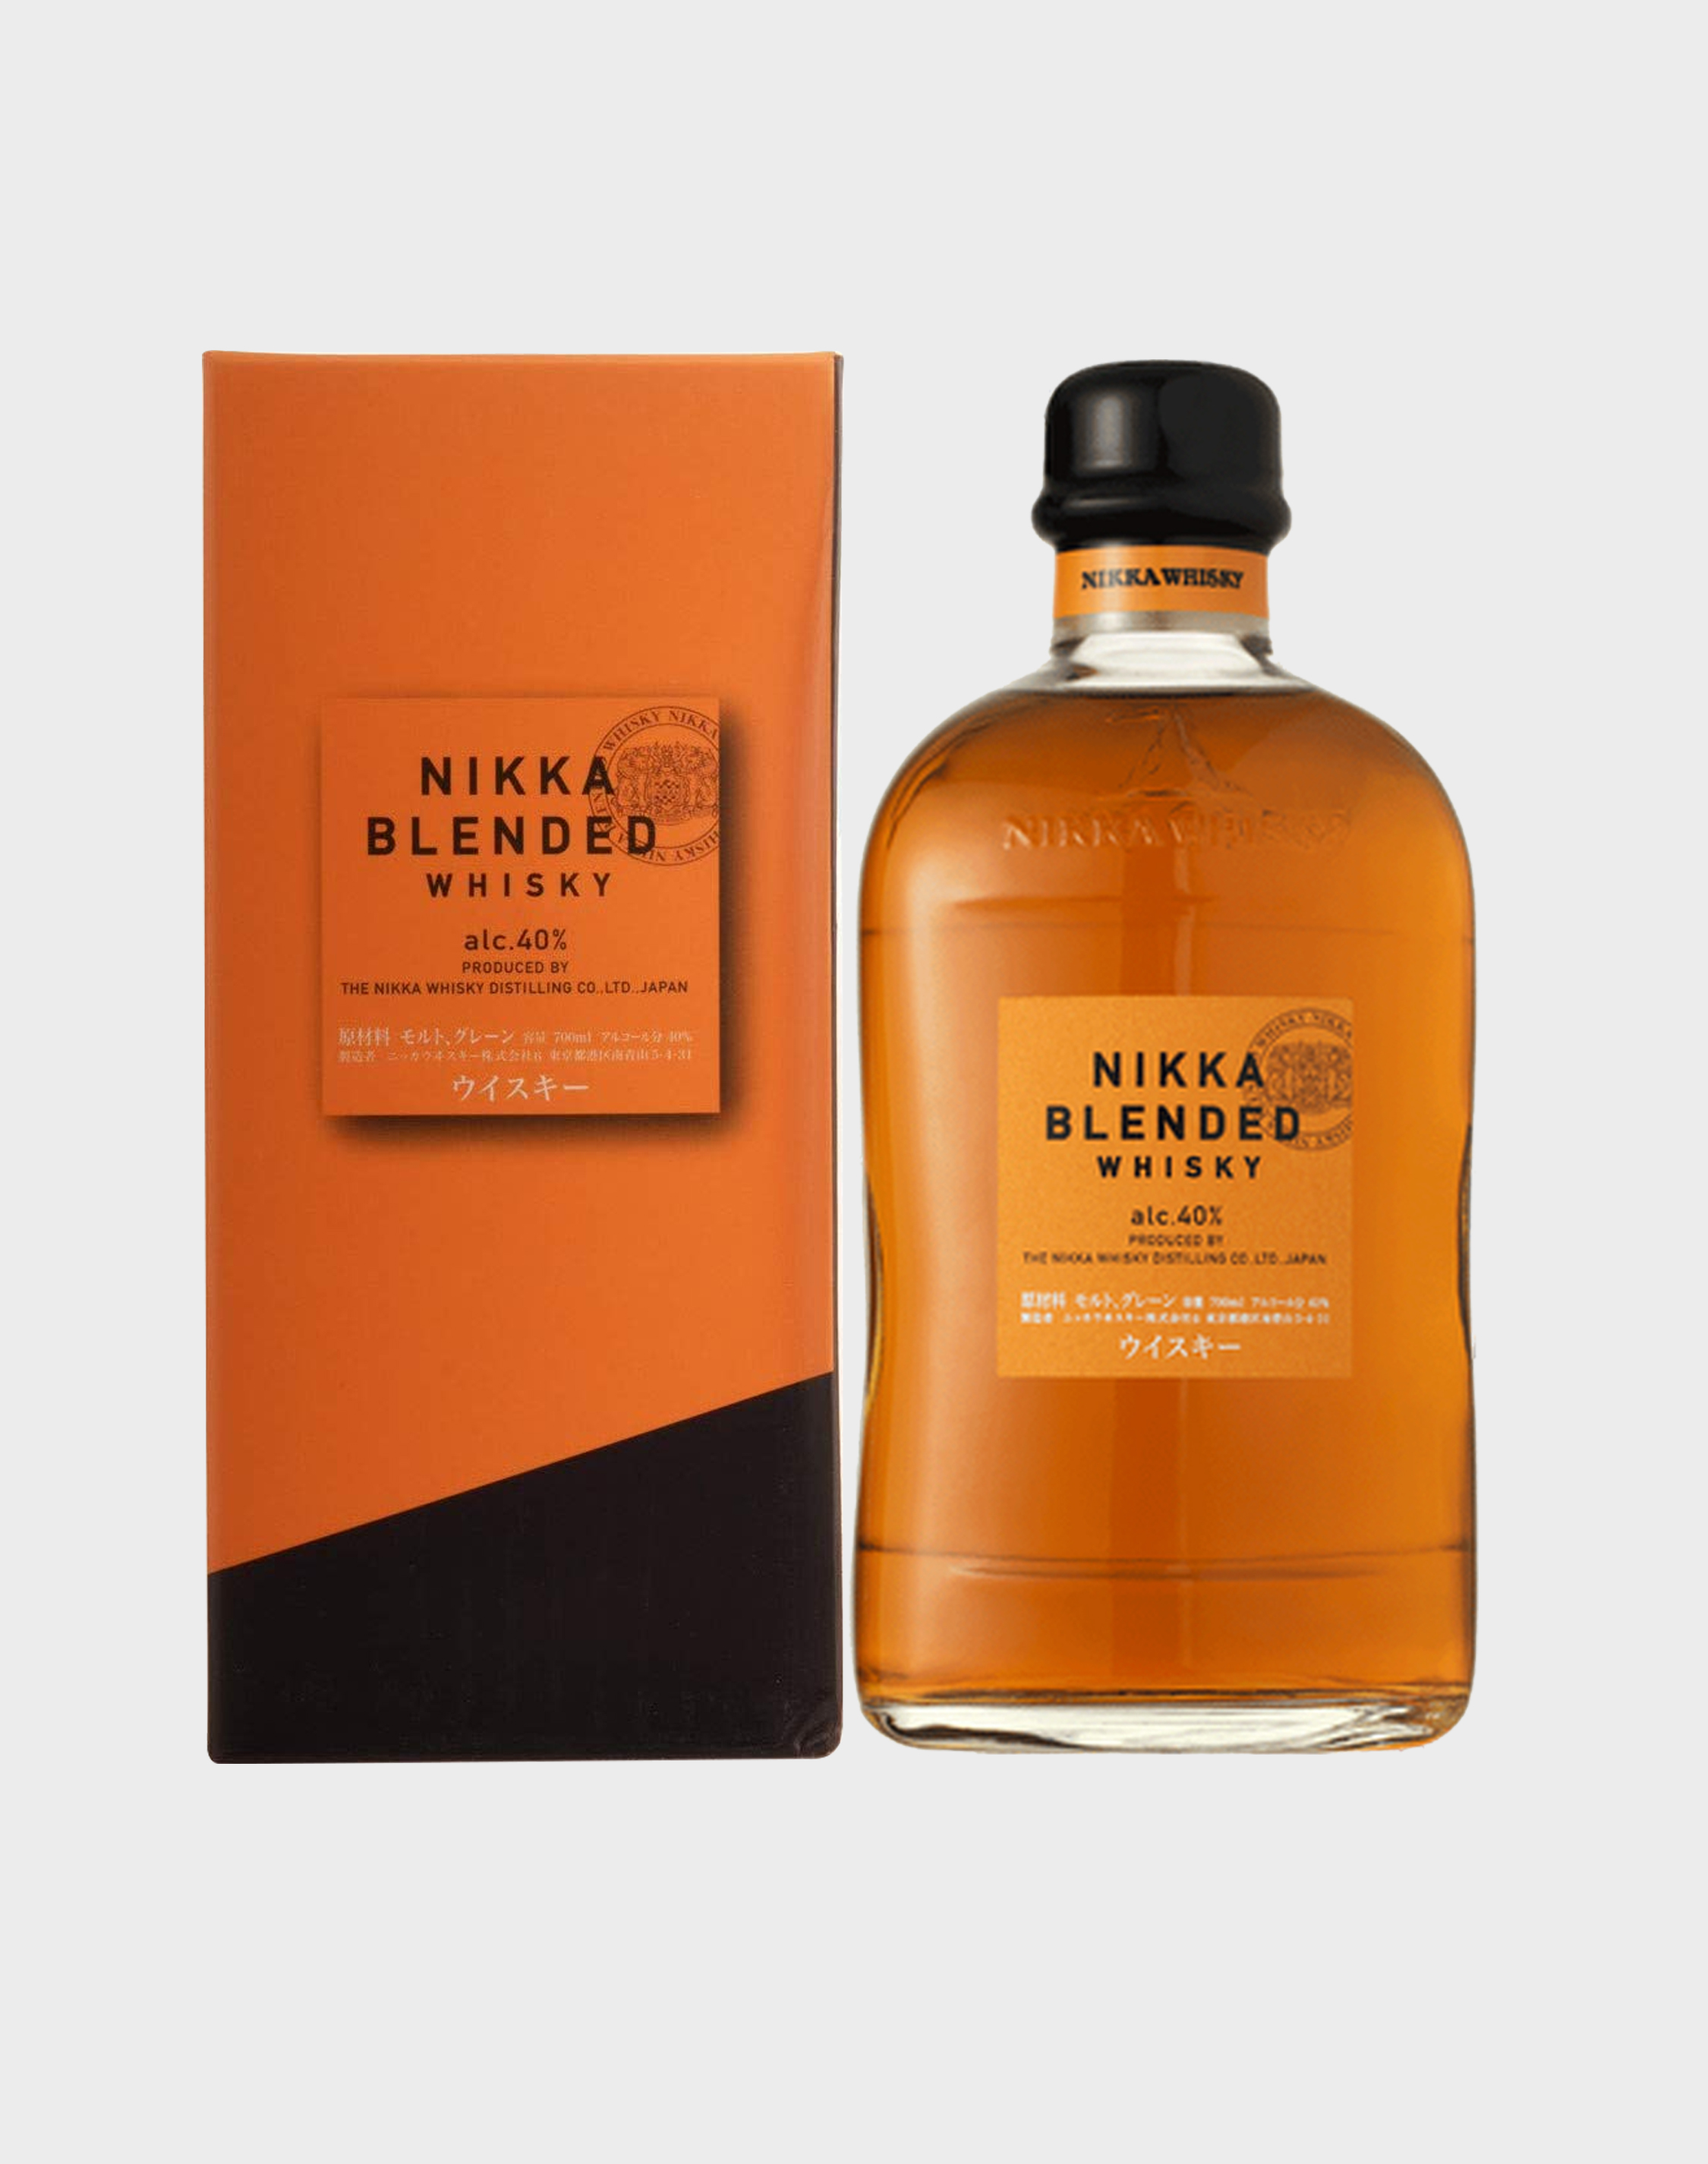 Nikka Blended Whisky